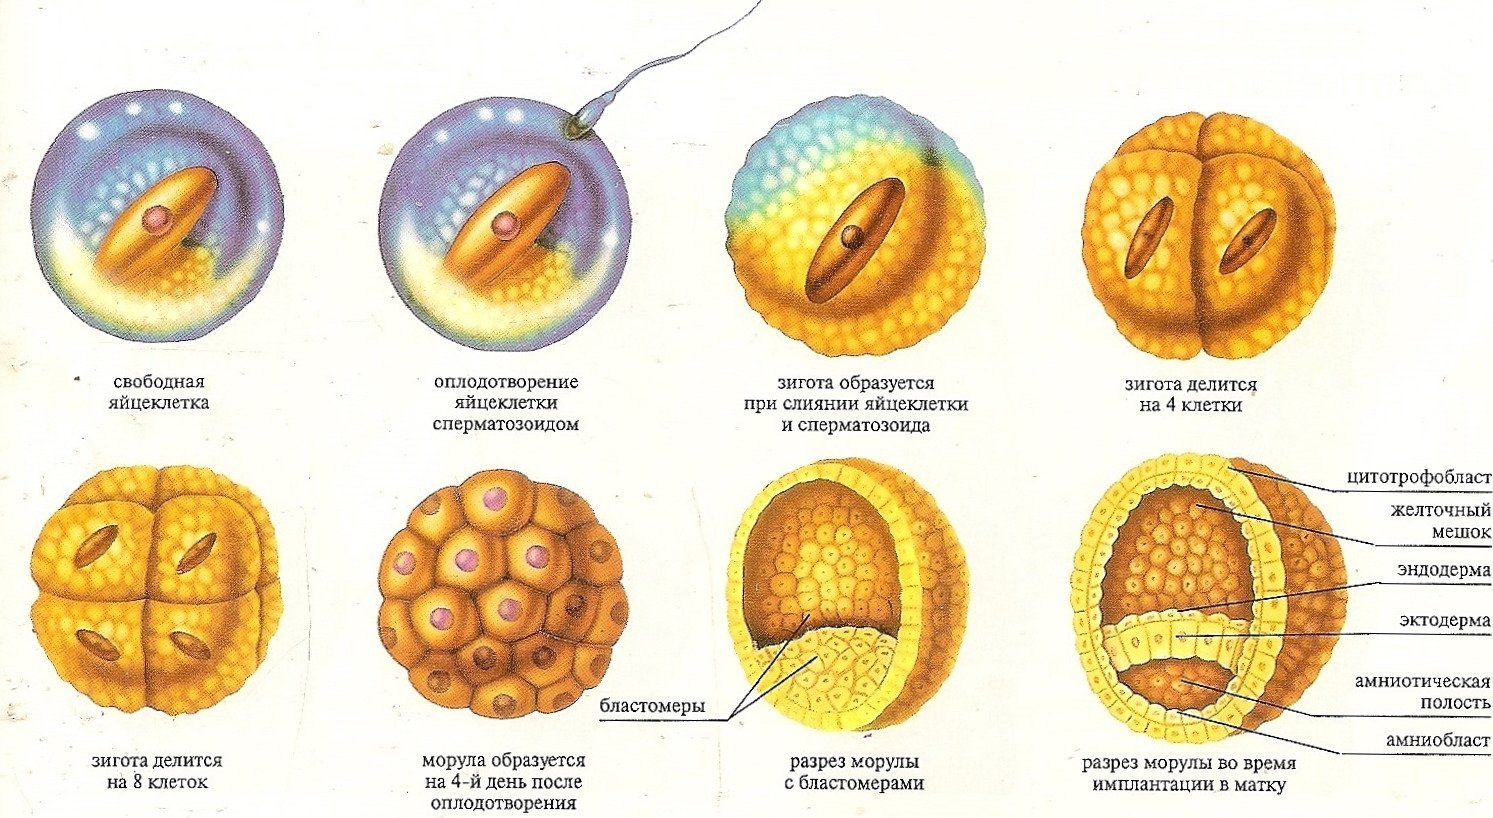 Чем оплодотворение отличается от. Оплодотворение морула. Стадии развития оплодотворенной яйцеклетки. Зигота эмбрион. Схема развития зиготы.